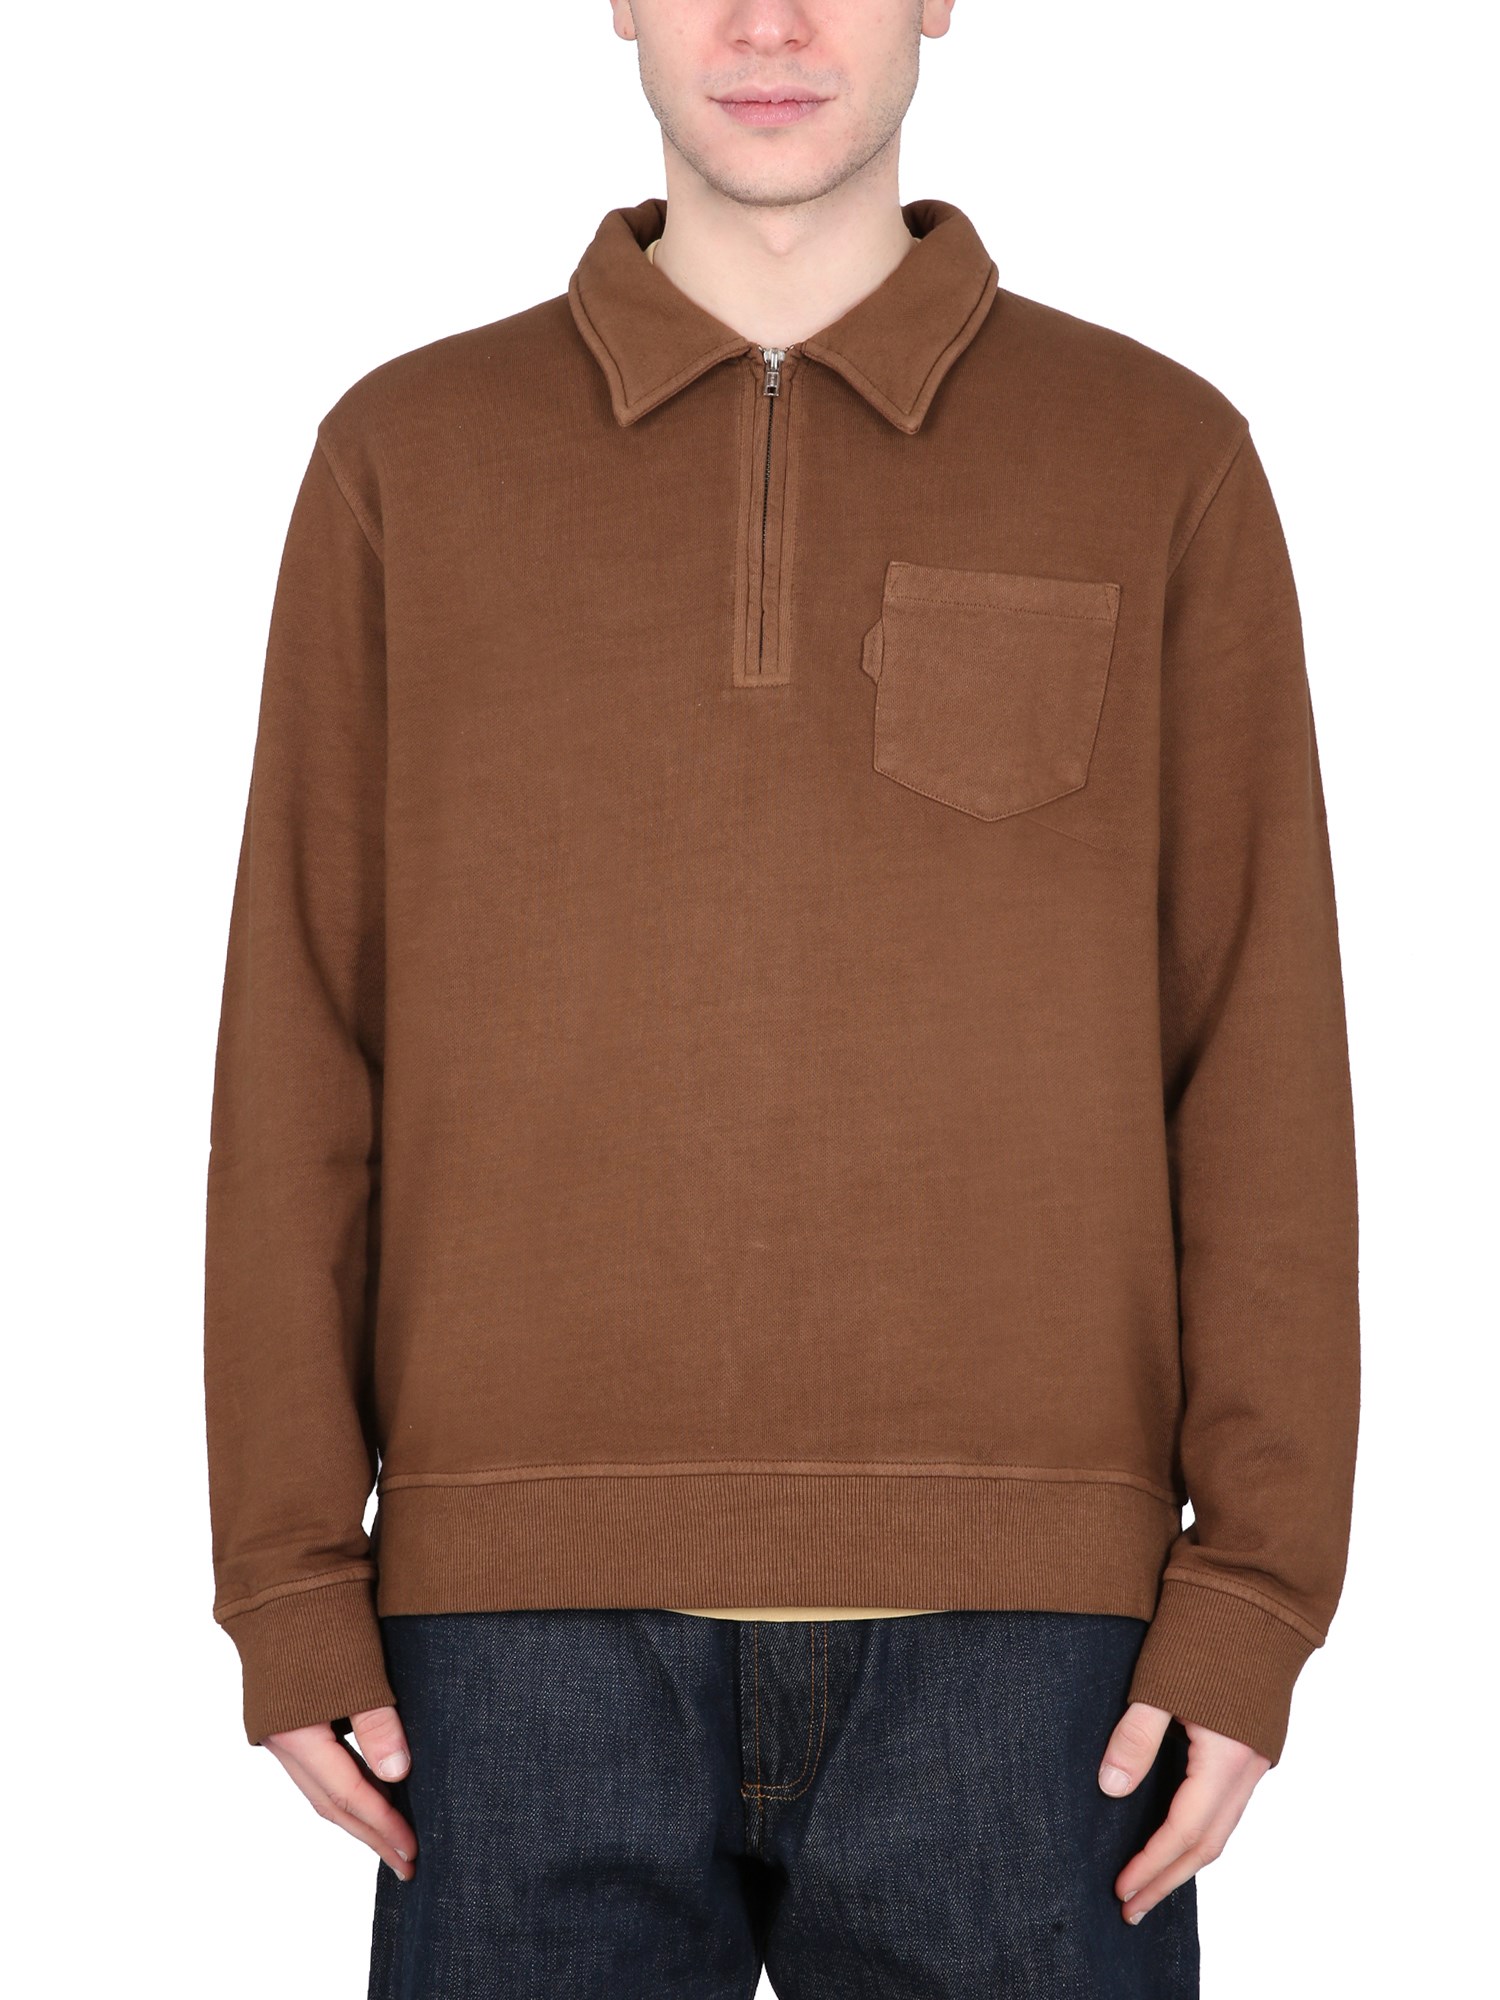 Ymc You Must Create Sudden Sweatshirt In Brown